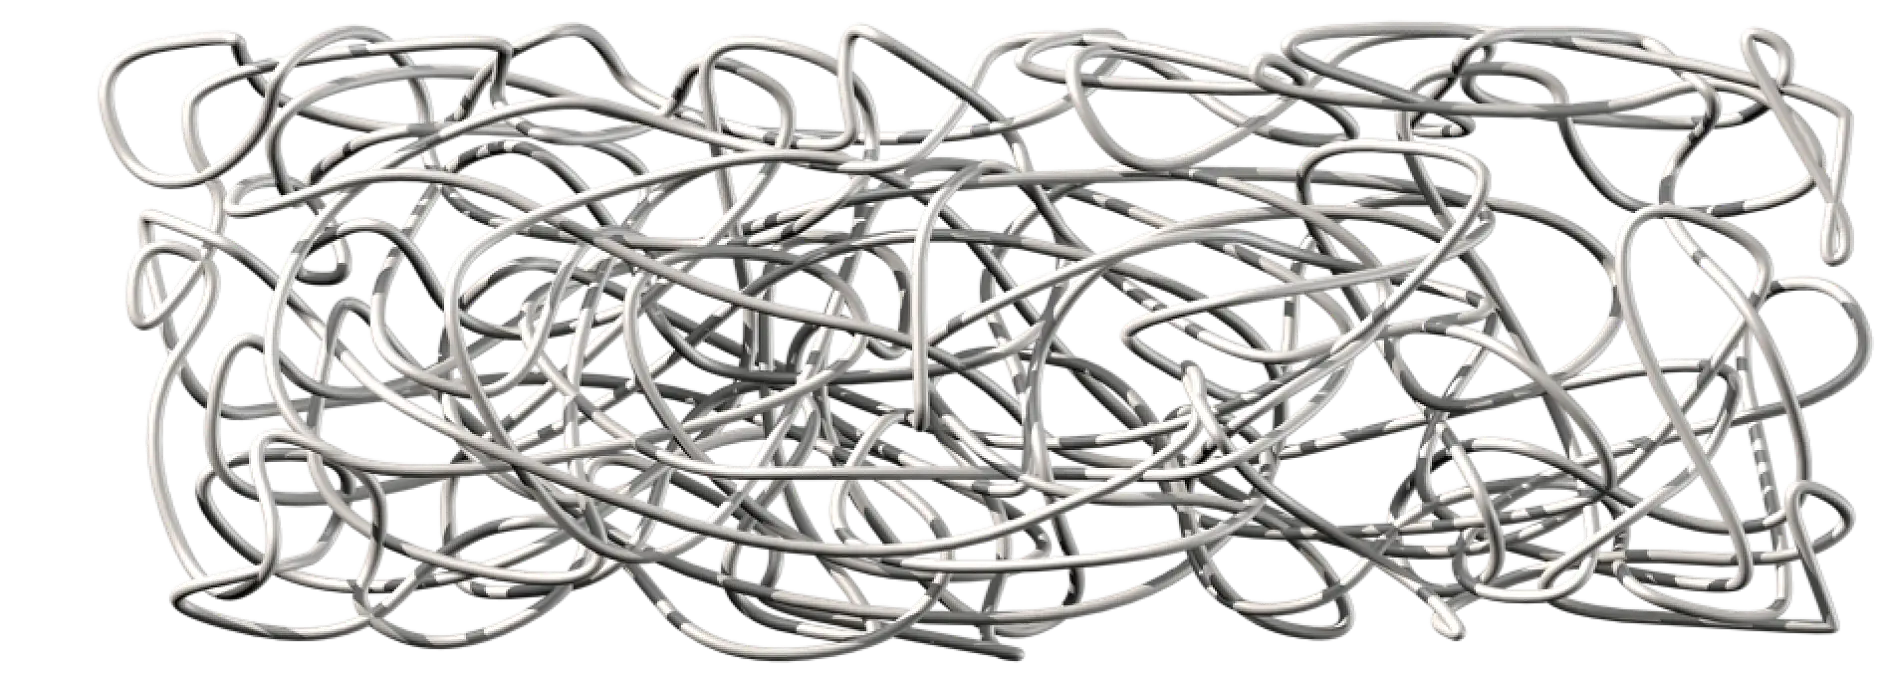 Přírodní kaučuk se skládá z mimořádně dlouhých polymerních řetězců, které jsou zapleteny, nikoliv spojeny